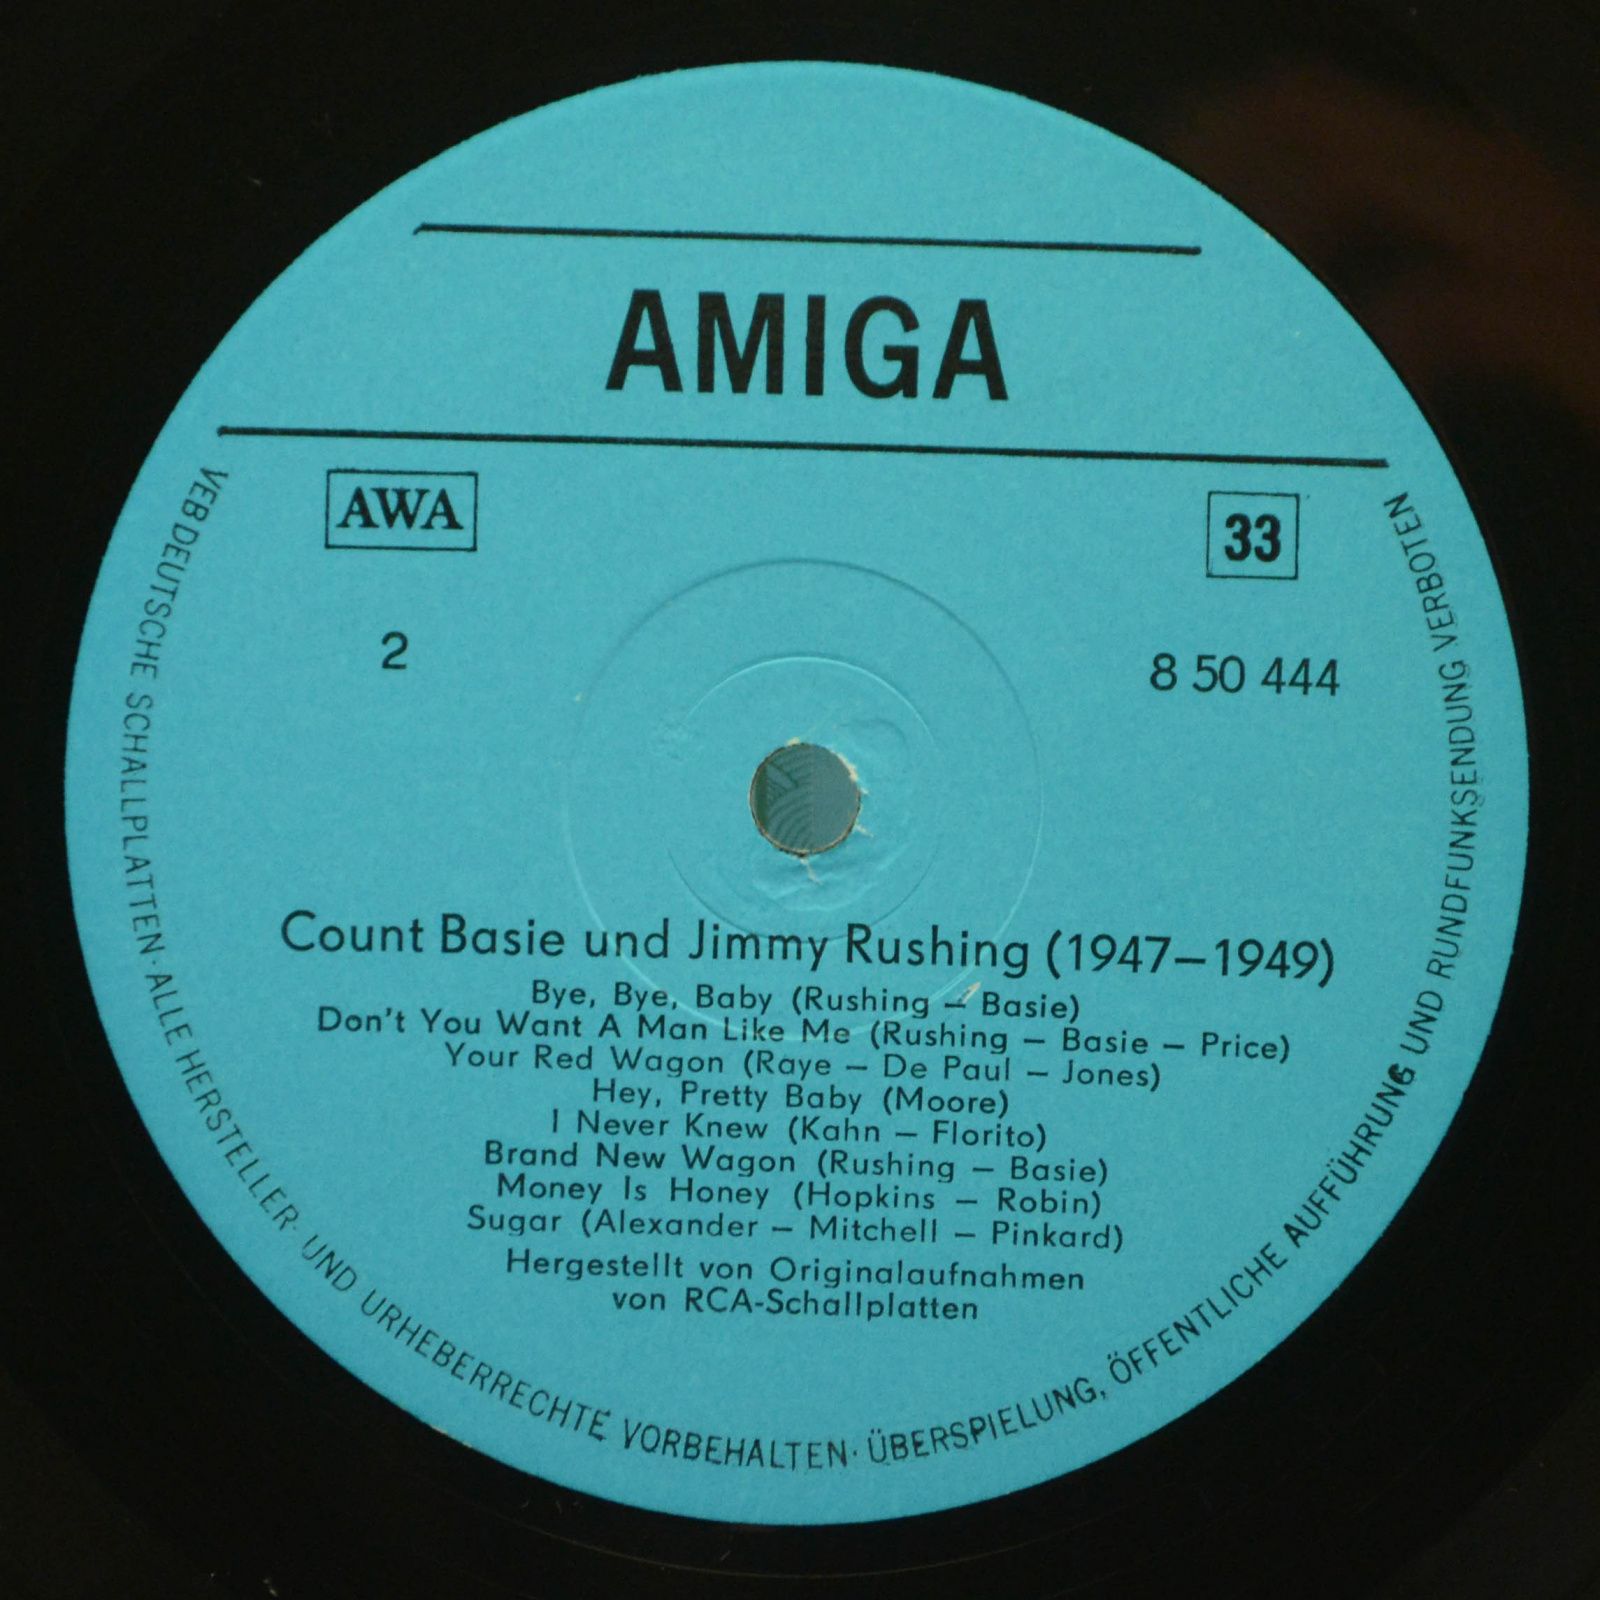 Count Basie / Jimmy Rushing — Count Basie - Jimmy Rushing (1947 - 1949), 1977